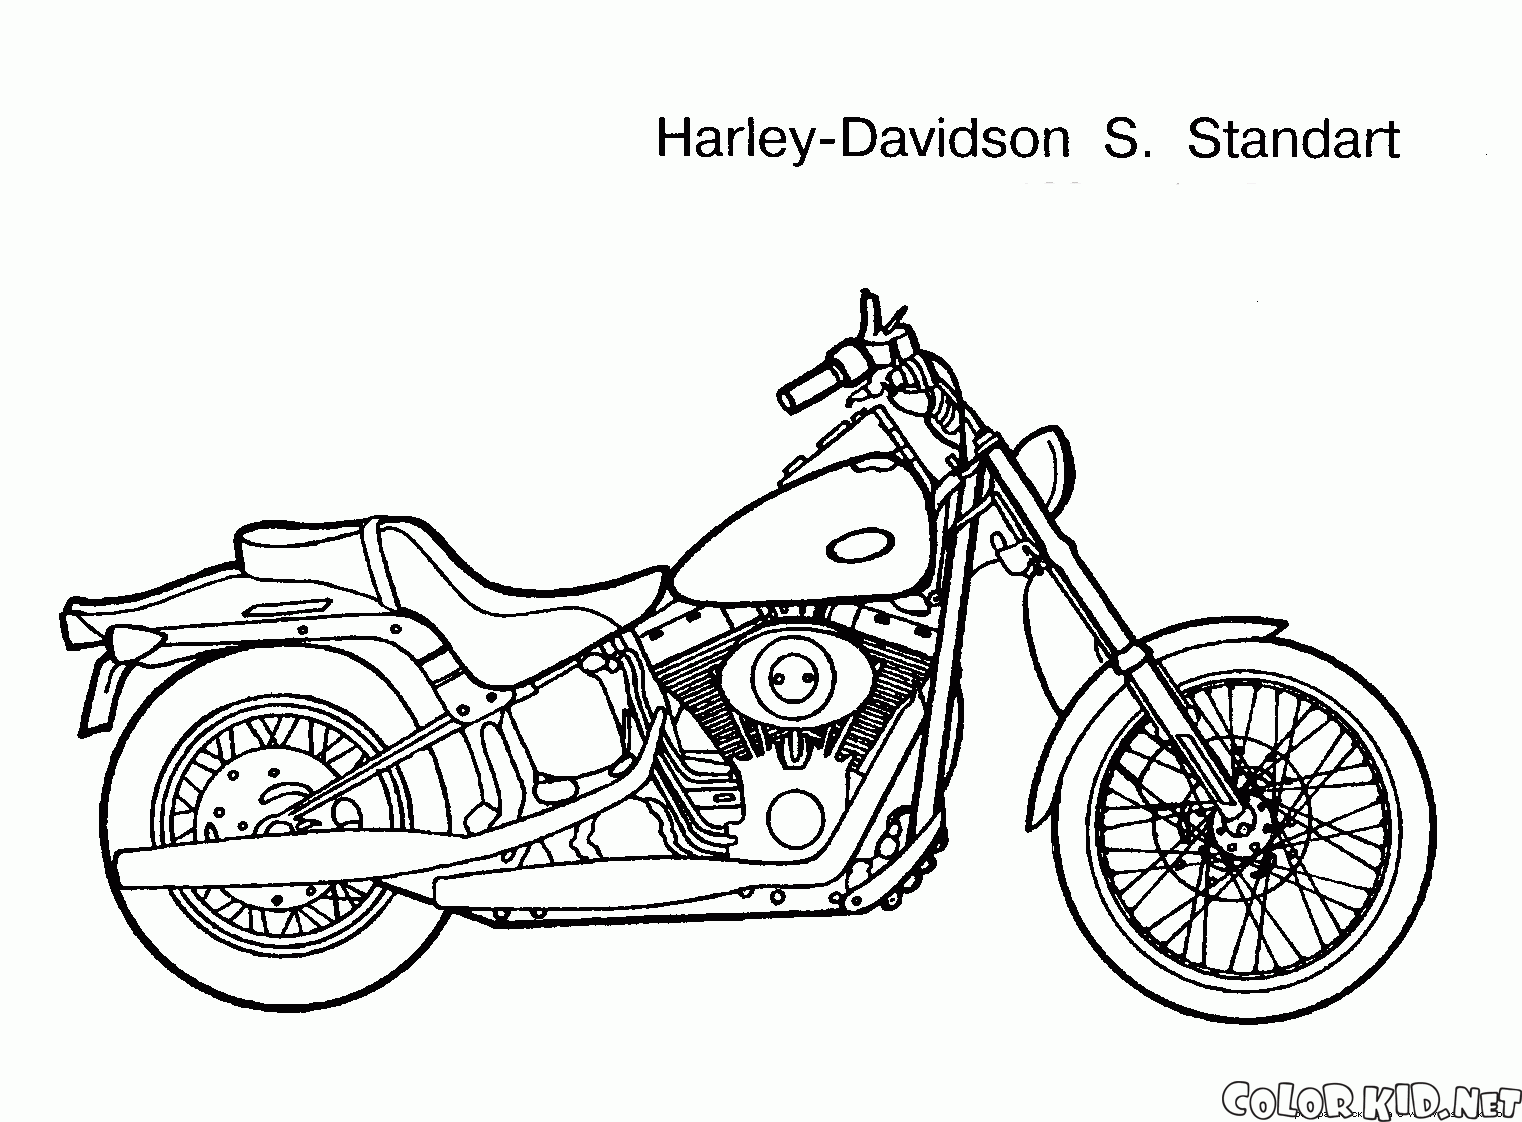 Coloring page - Reparação da motocicleta é difícil